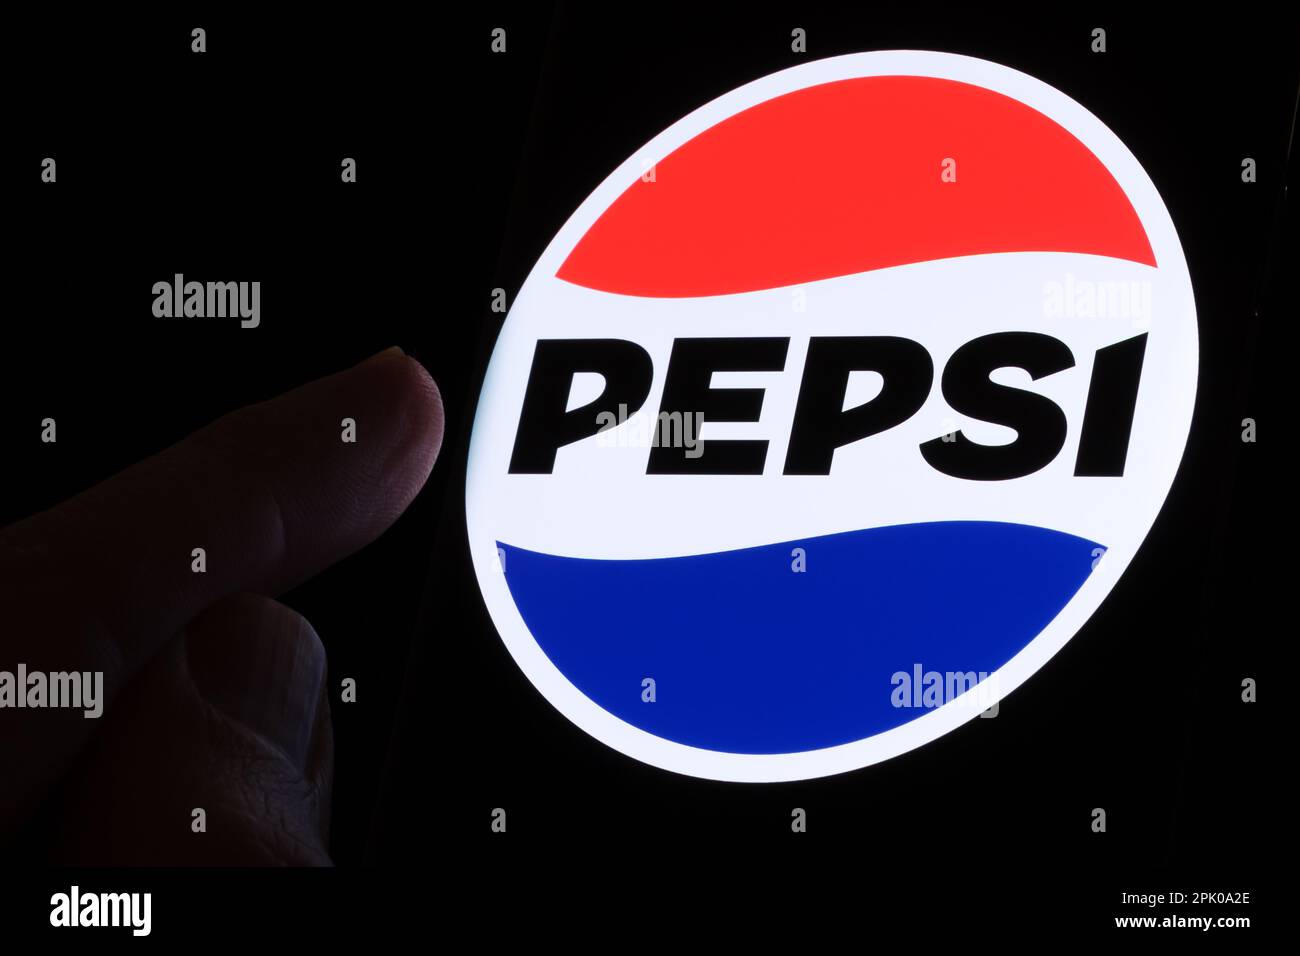 PEPSI nuovo logo introdotto nel 2023 visto sullo schermo che si accende al buio e il dito è puntato su di esso. Stafford, Regno Unito, 3 aprile 2023 Foto Stock